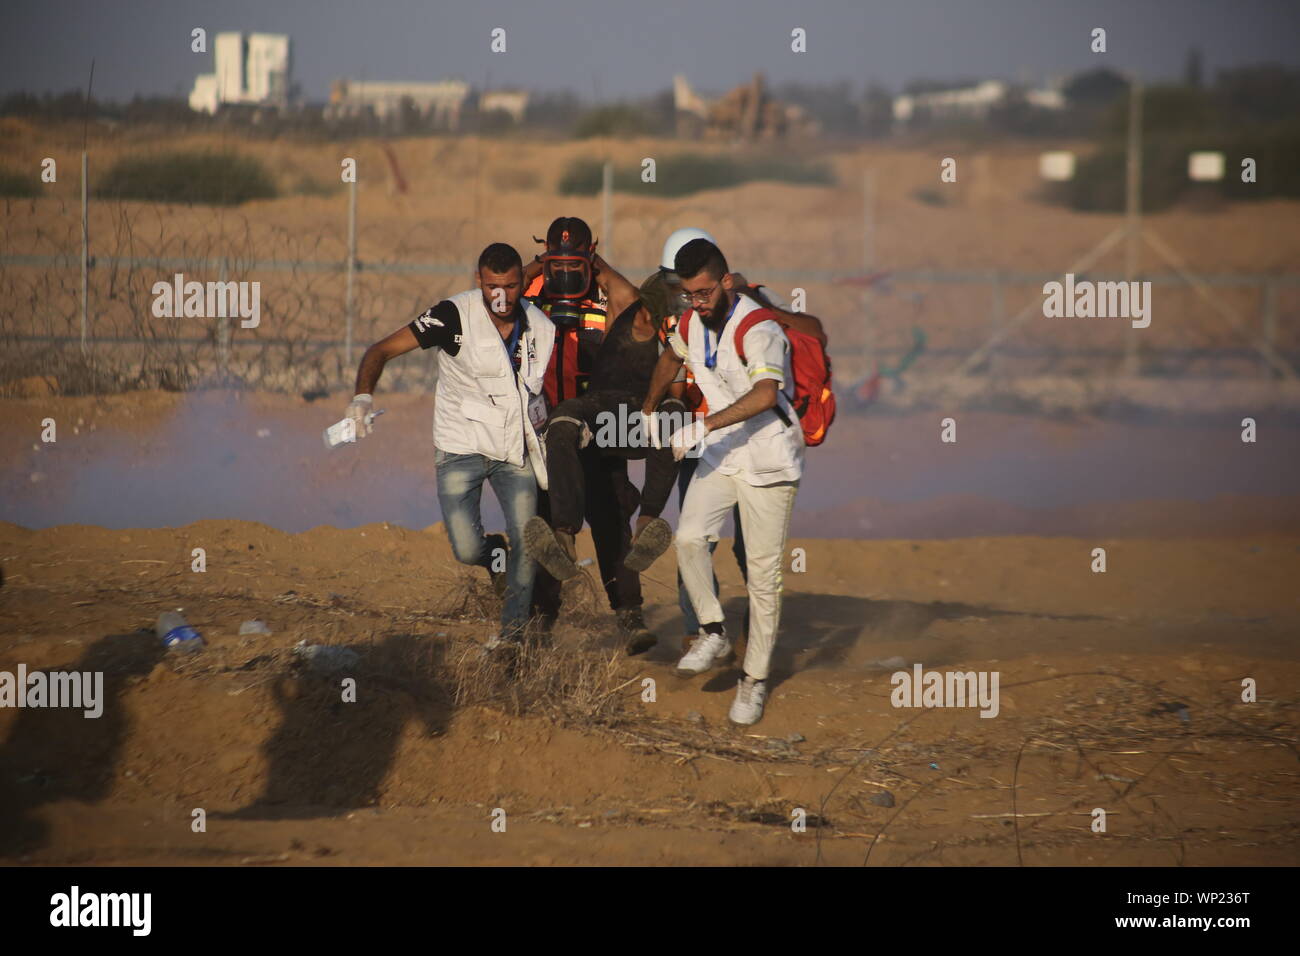 Gaza, Palestina. 06 Sep, 2019. Médicos palestinos llevar a una persona herida durante una manifestación anti-Israel en la Israel-Gaza valla fronteriza en el sur de la Franja de Gaza. Crédito: Sopa de imágenes limitado/Alamy Live News Foto de stock